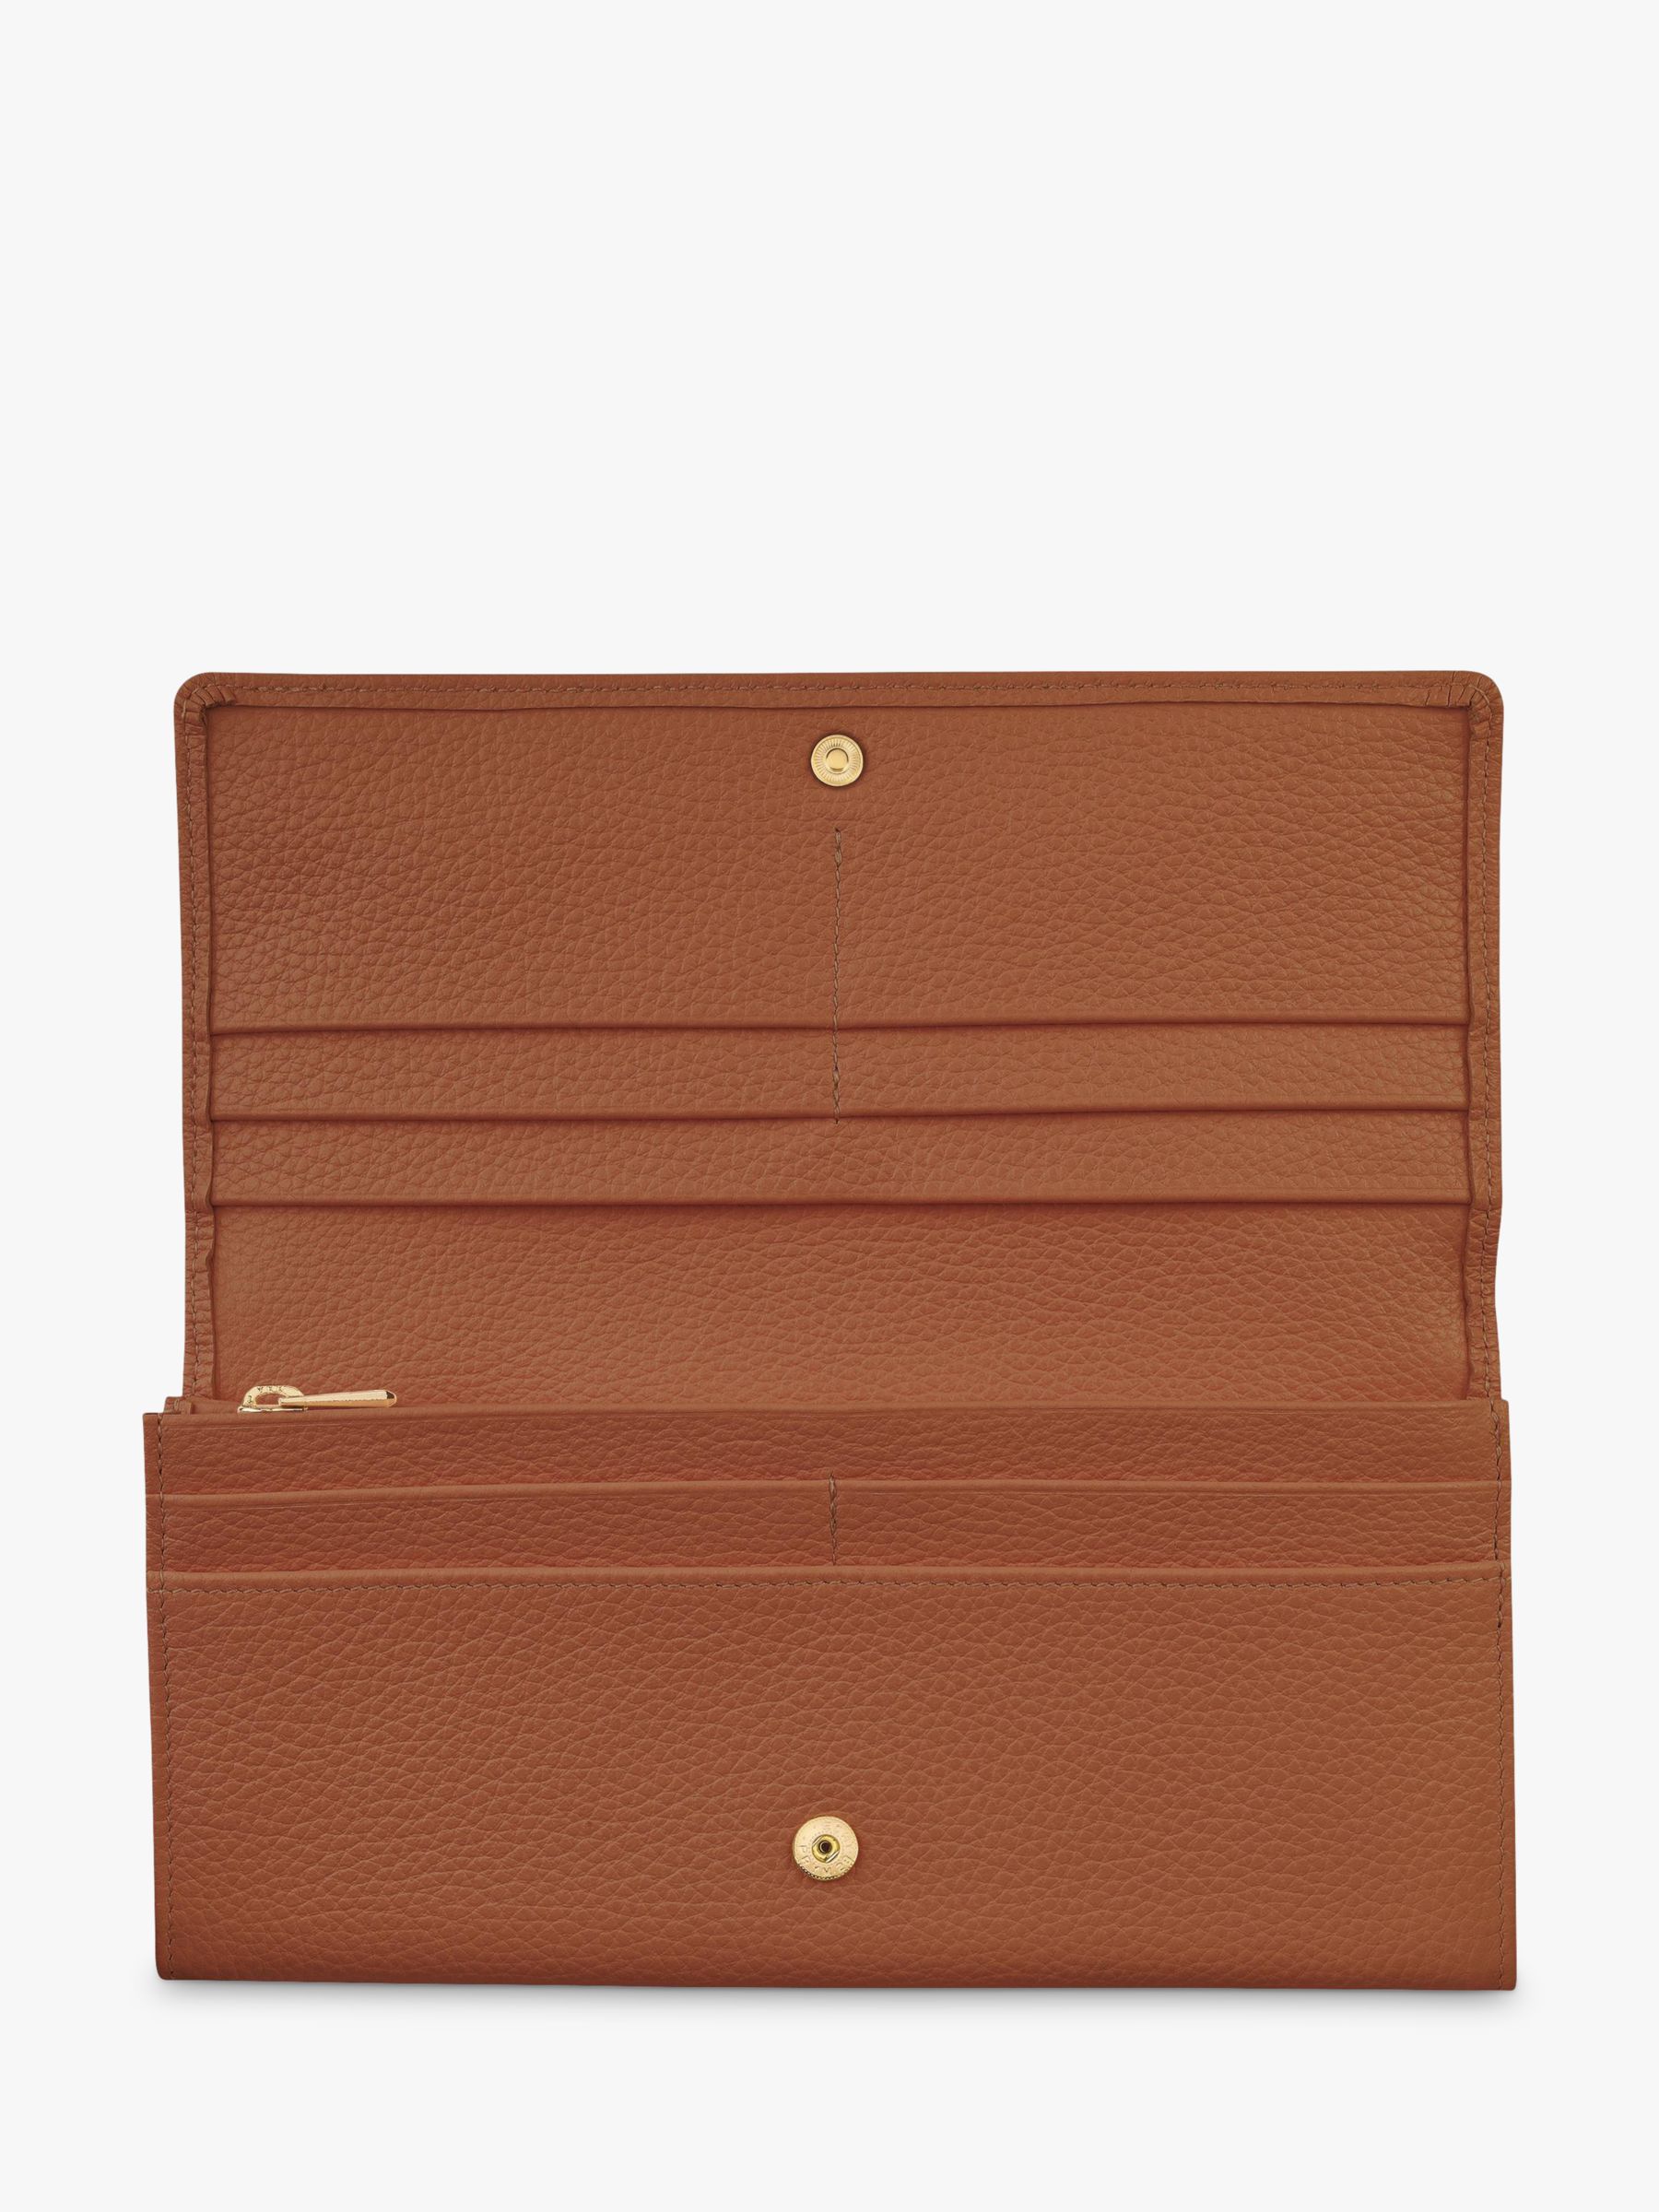 Longchamp Le Foulonné Continental Leather Wallet, Caramel